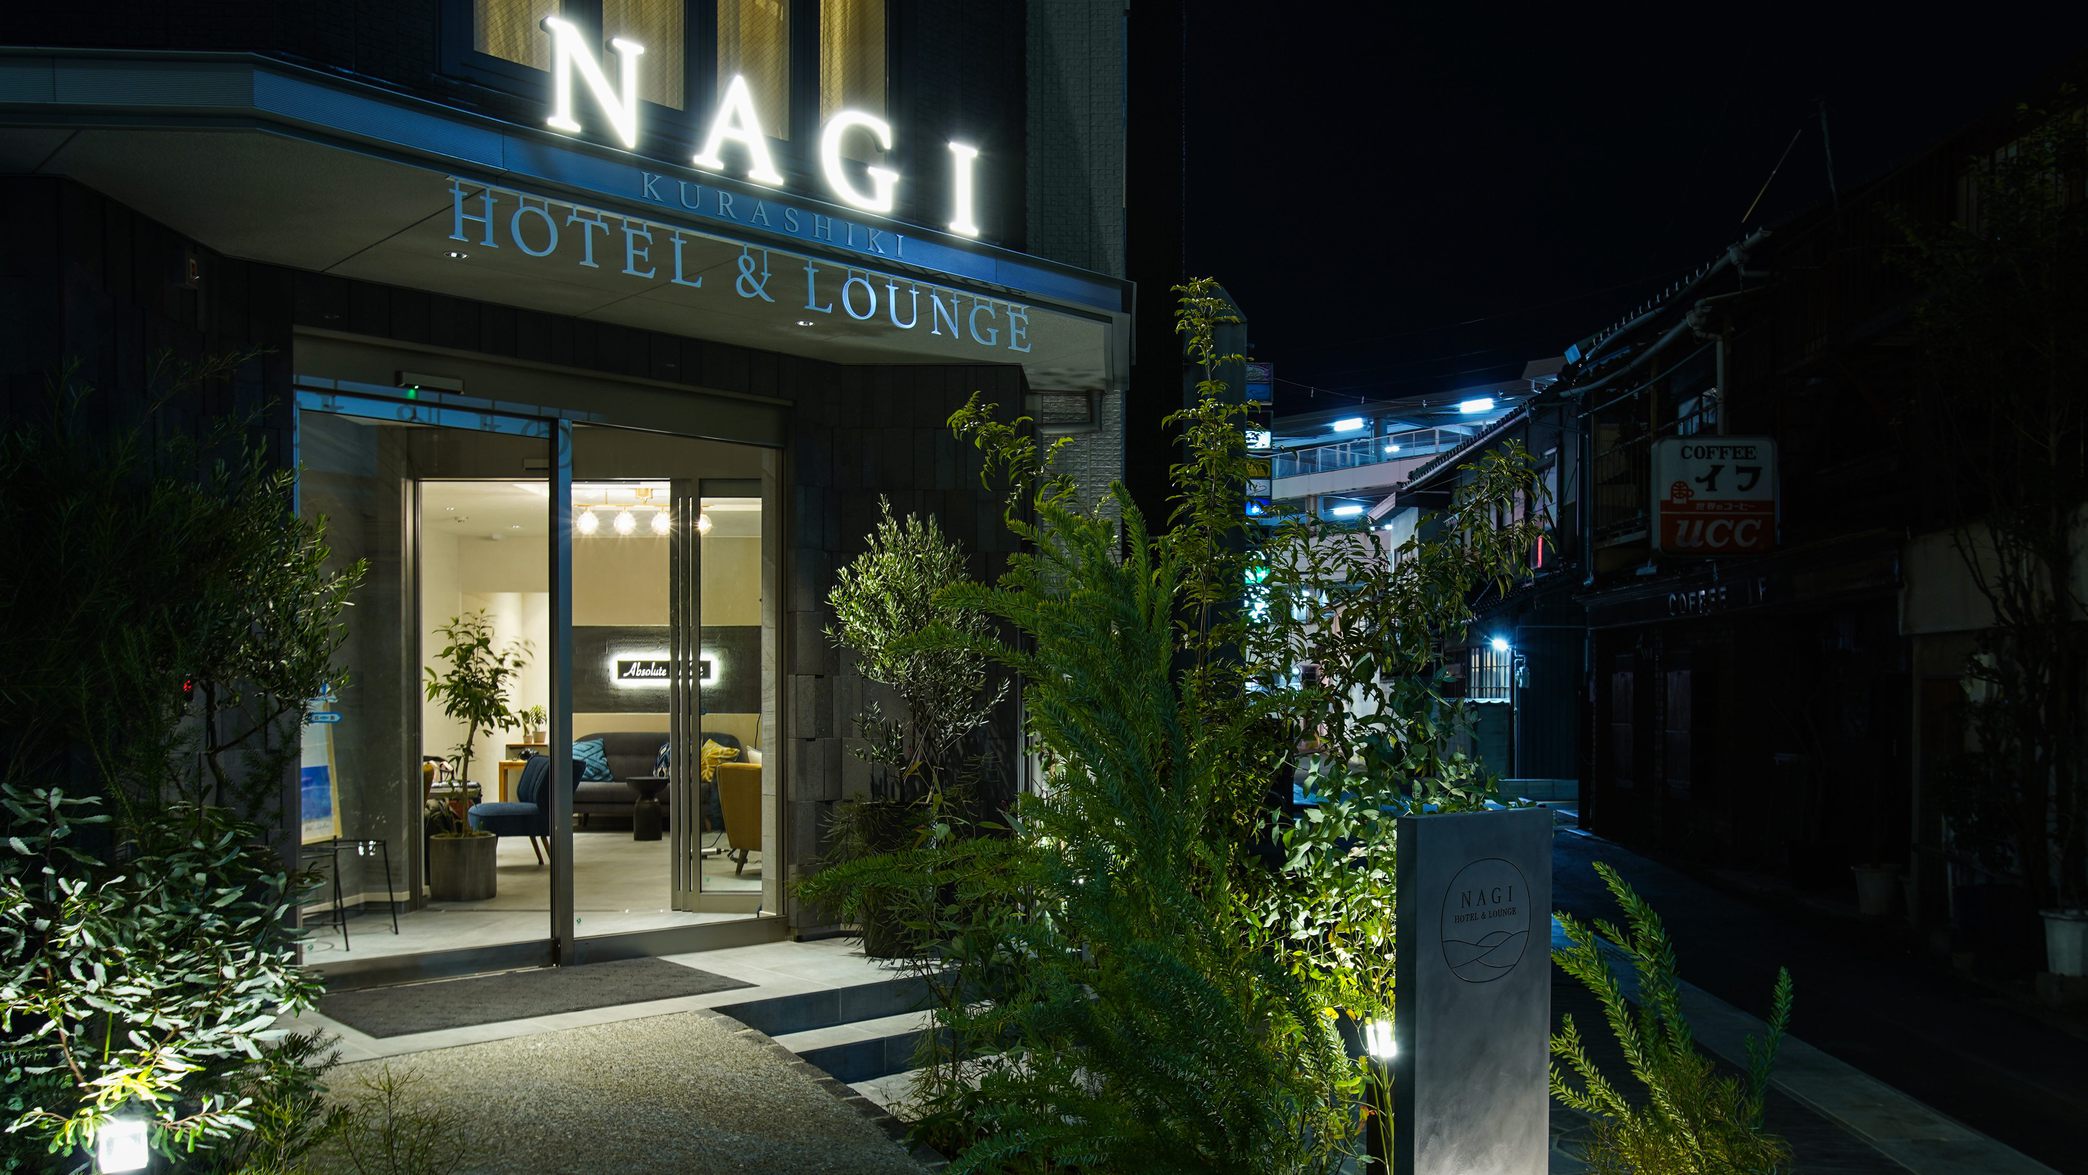 Nagi Kurashiki Hotel & Lounge